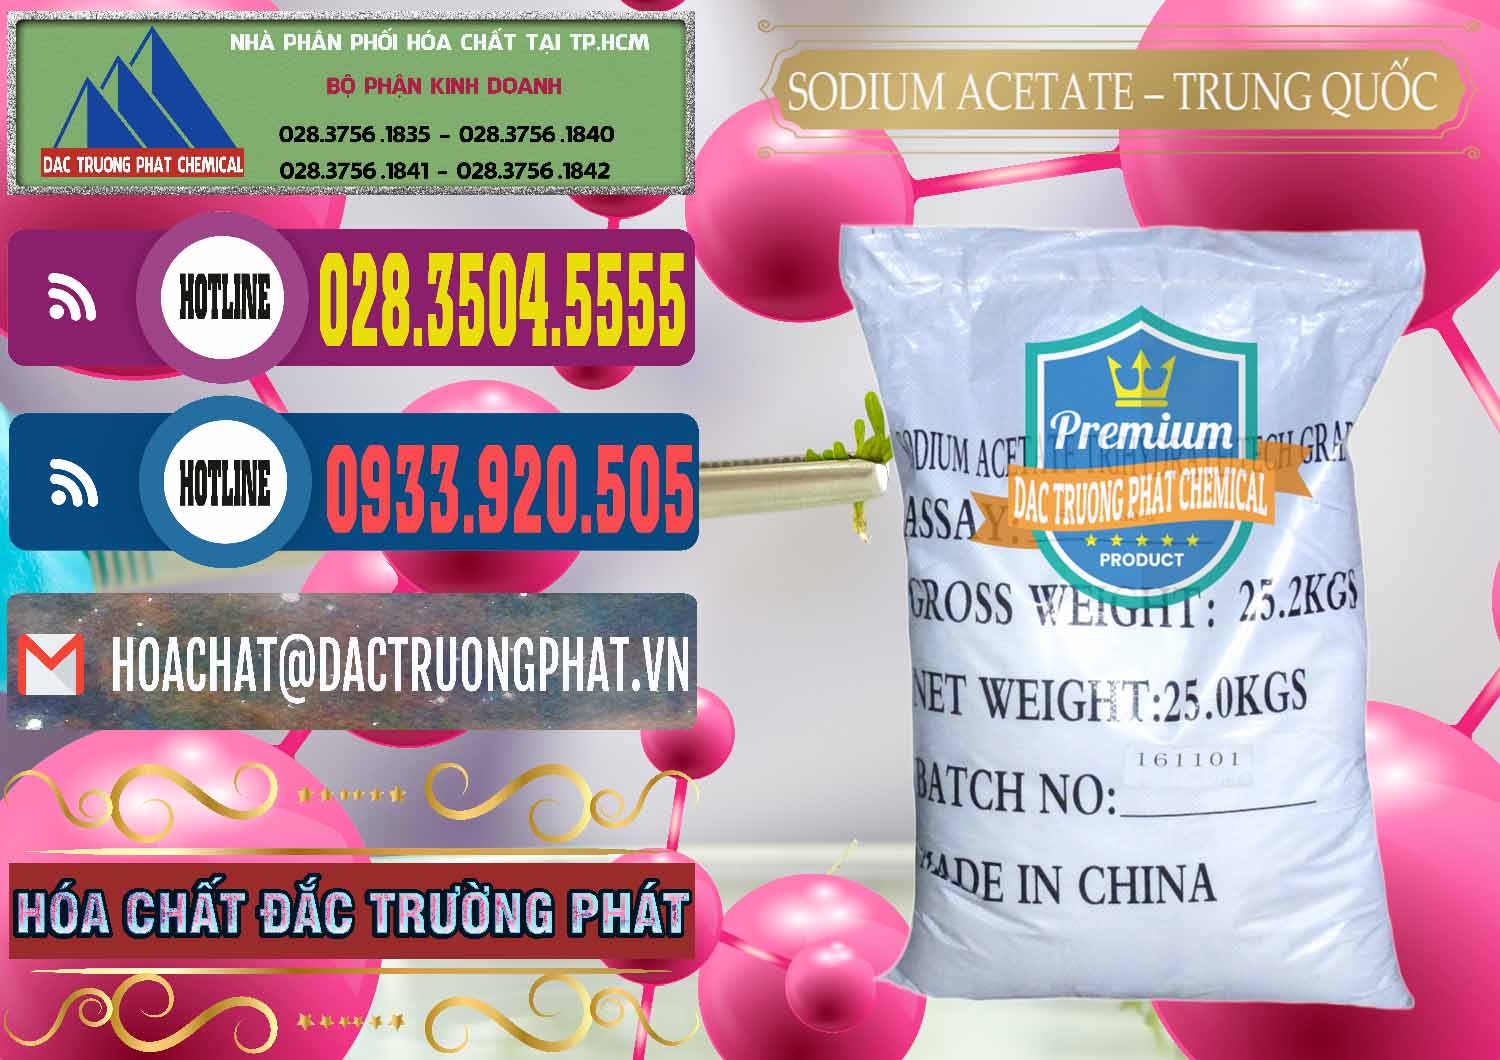 Cty kinh doanh & bán Sodium Acetate - Natri Acetate Trung Quốc China - 0134 - Đơn vị cung cấp _ nhập khẩu hóa chất tại TP.HCM - muabanhoachat.com.vn